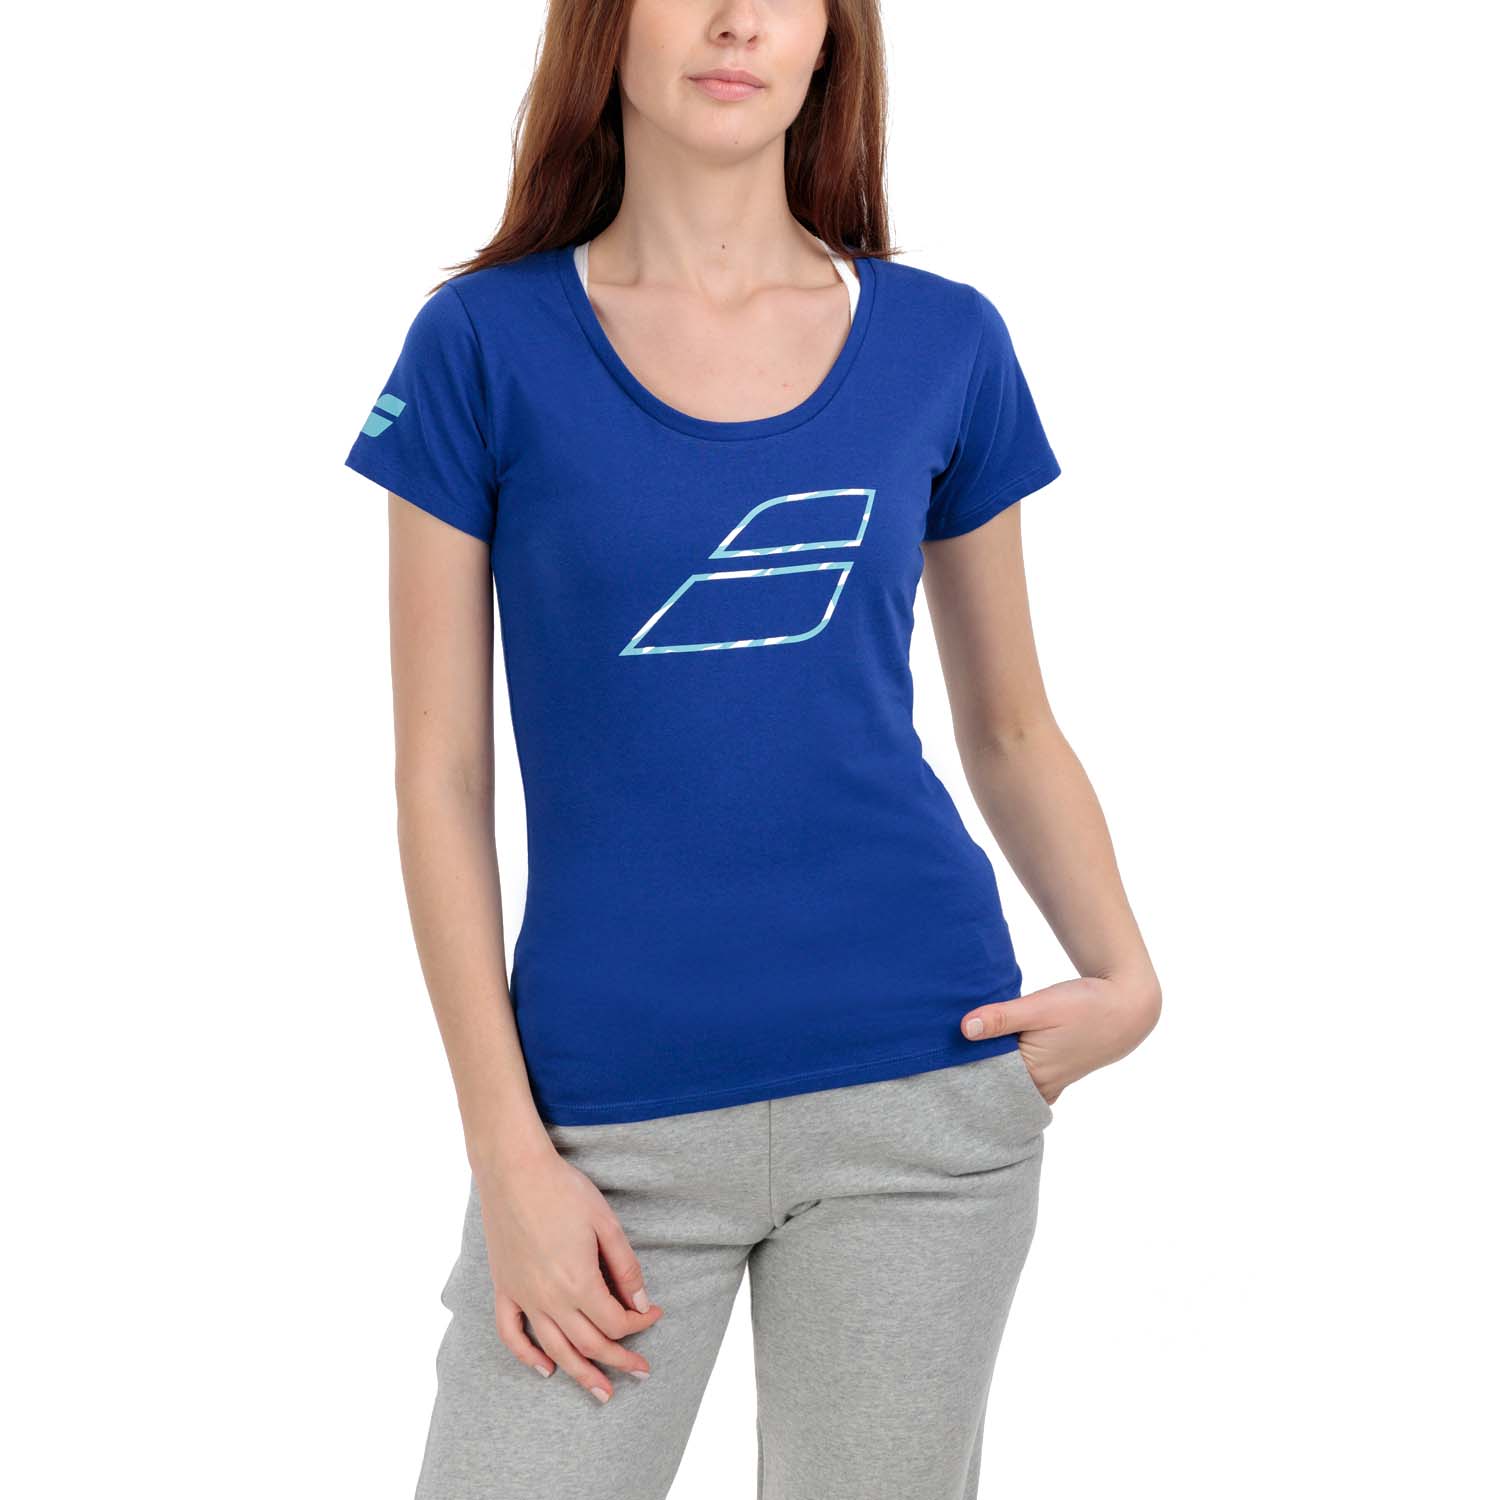 Babolat Exercise Flag Camiseta - Sodalite Blue